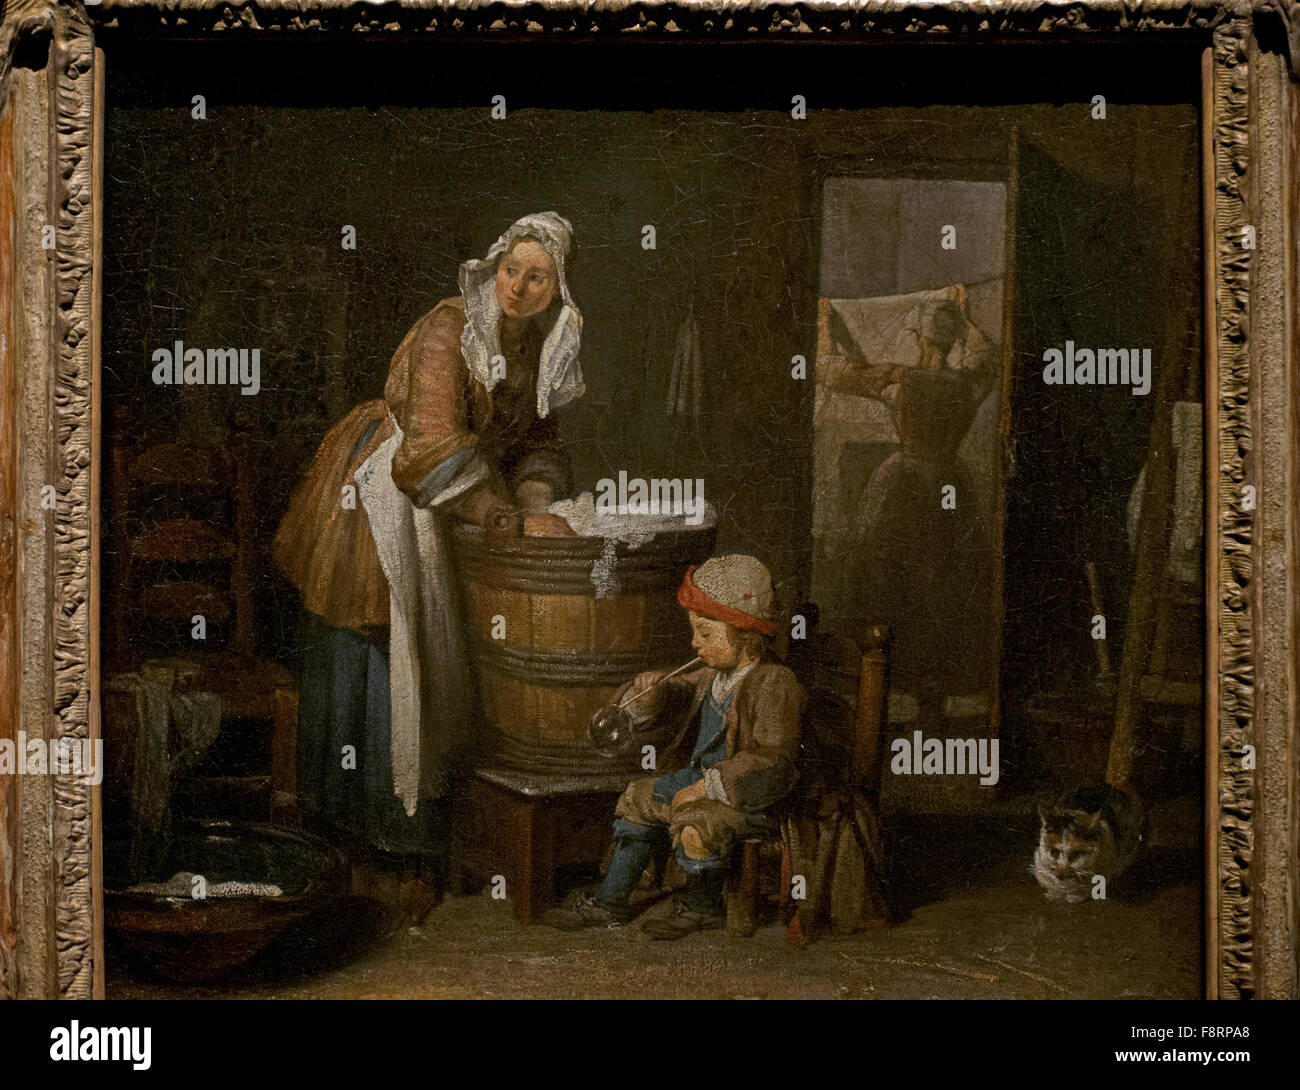 Jean Siméon Chardin (1699-1779). Le peintre français. La lavandière. Musée national. Stockholm. La Suède. Banque D'Images